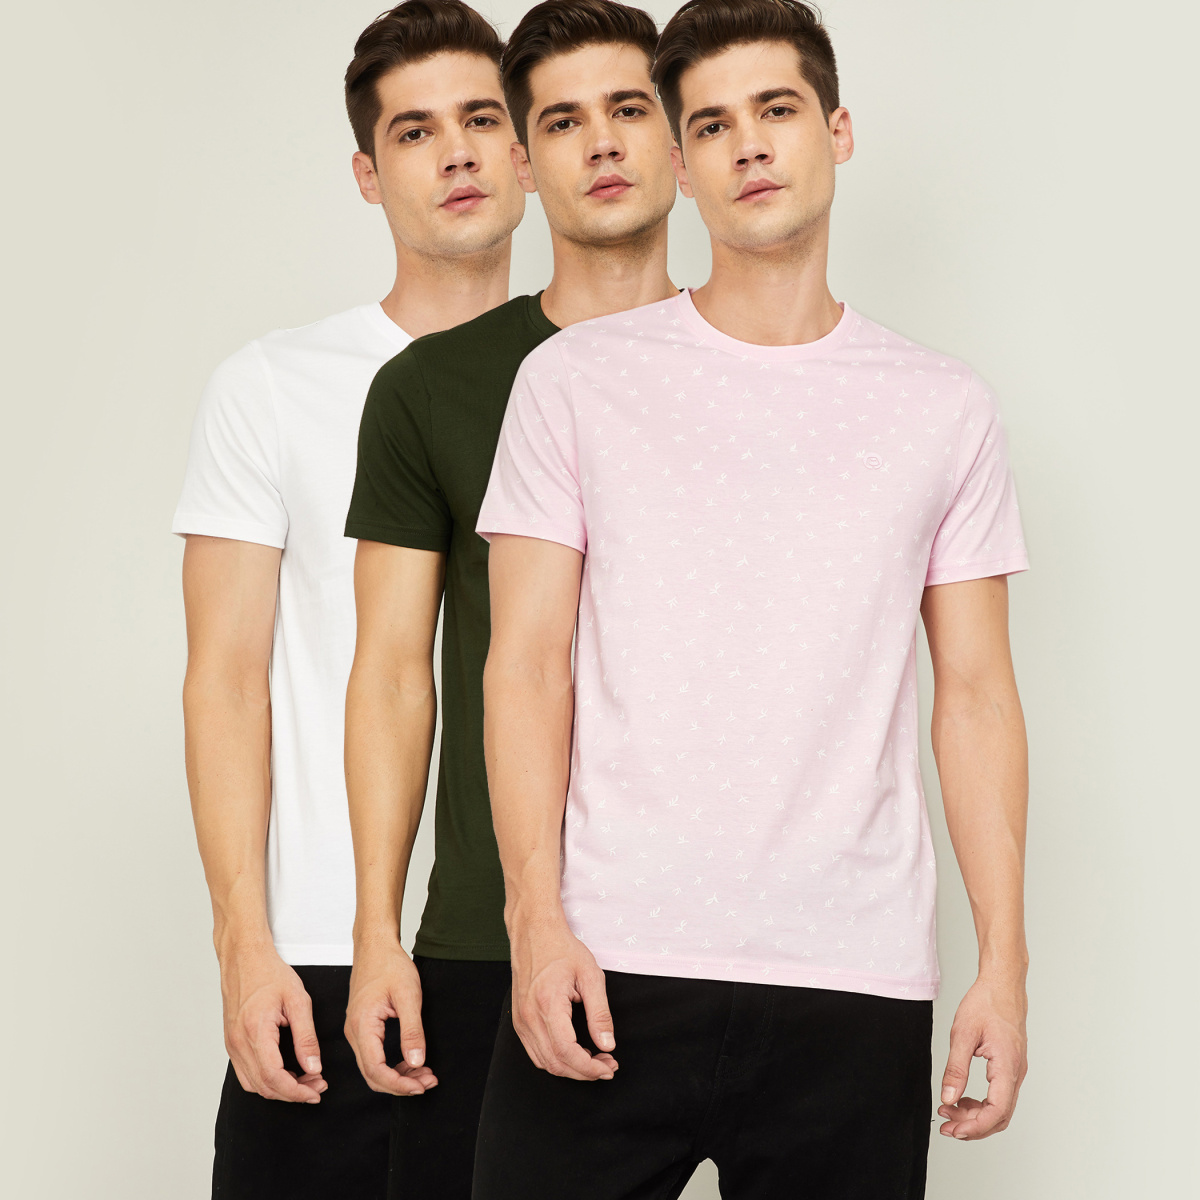 BOSSINI Men Printed Crew Neck T-shirt- Pack of 3